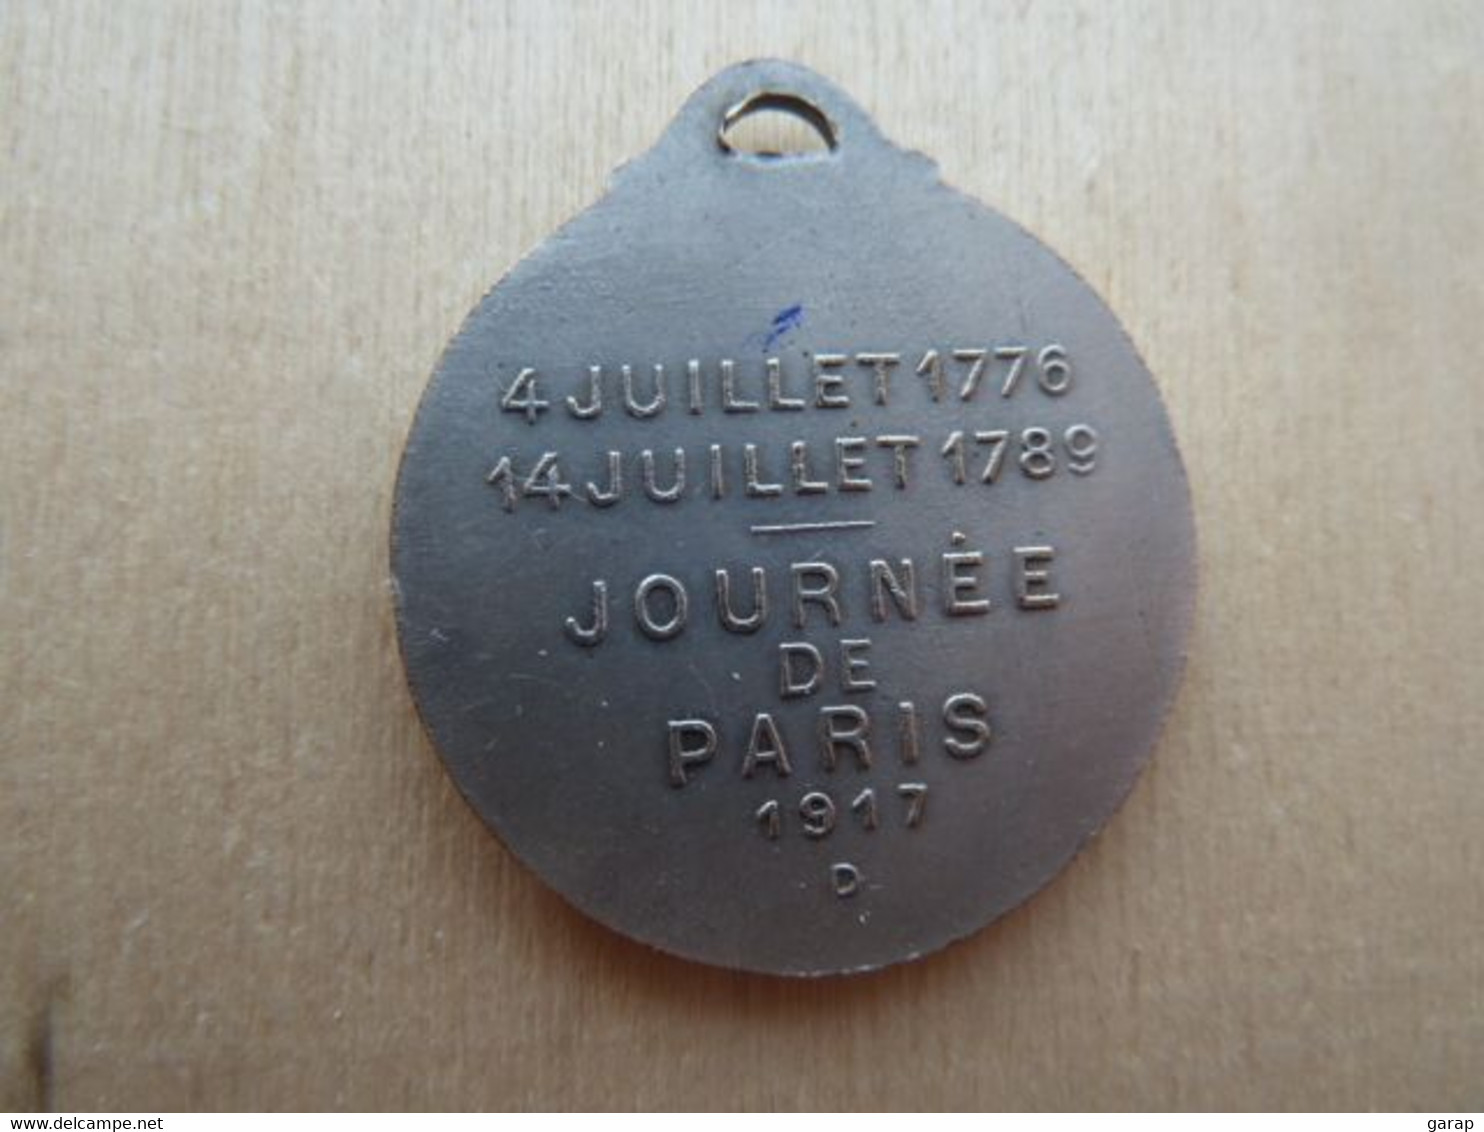 DA-126 Médaille Métal Gris Washington Lafayette Signée Gaston Lavrillier Paris -art.Journées De Paris 1917 - Tijdschriften & Catalogi